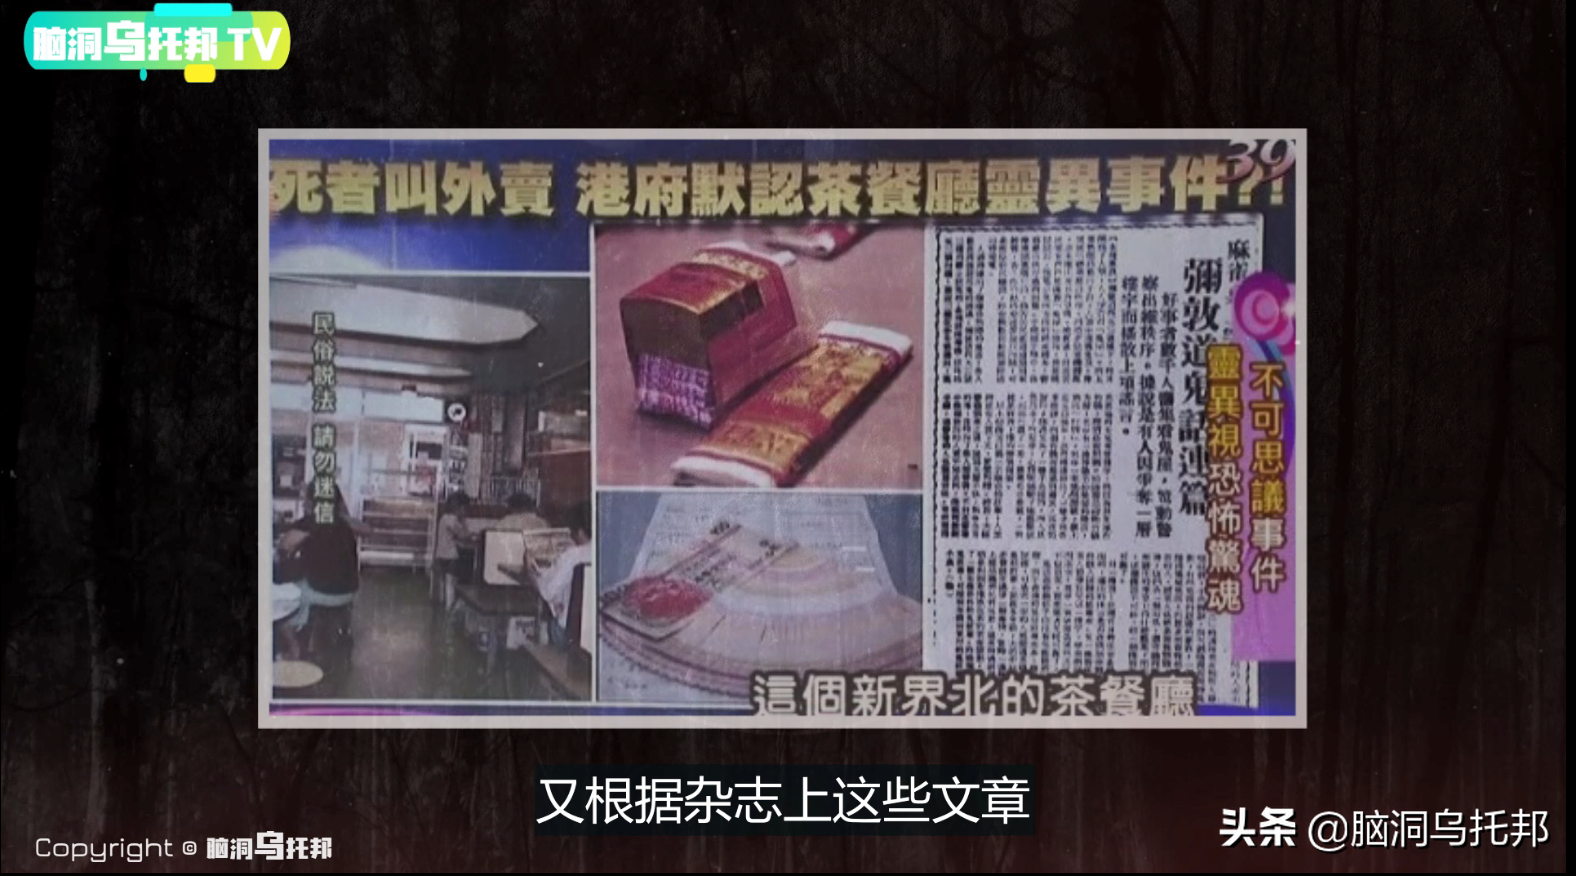 香港政府唯一承认的灵异事件？新界北茶餐厅鬼点餐真相究竟是什么